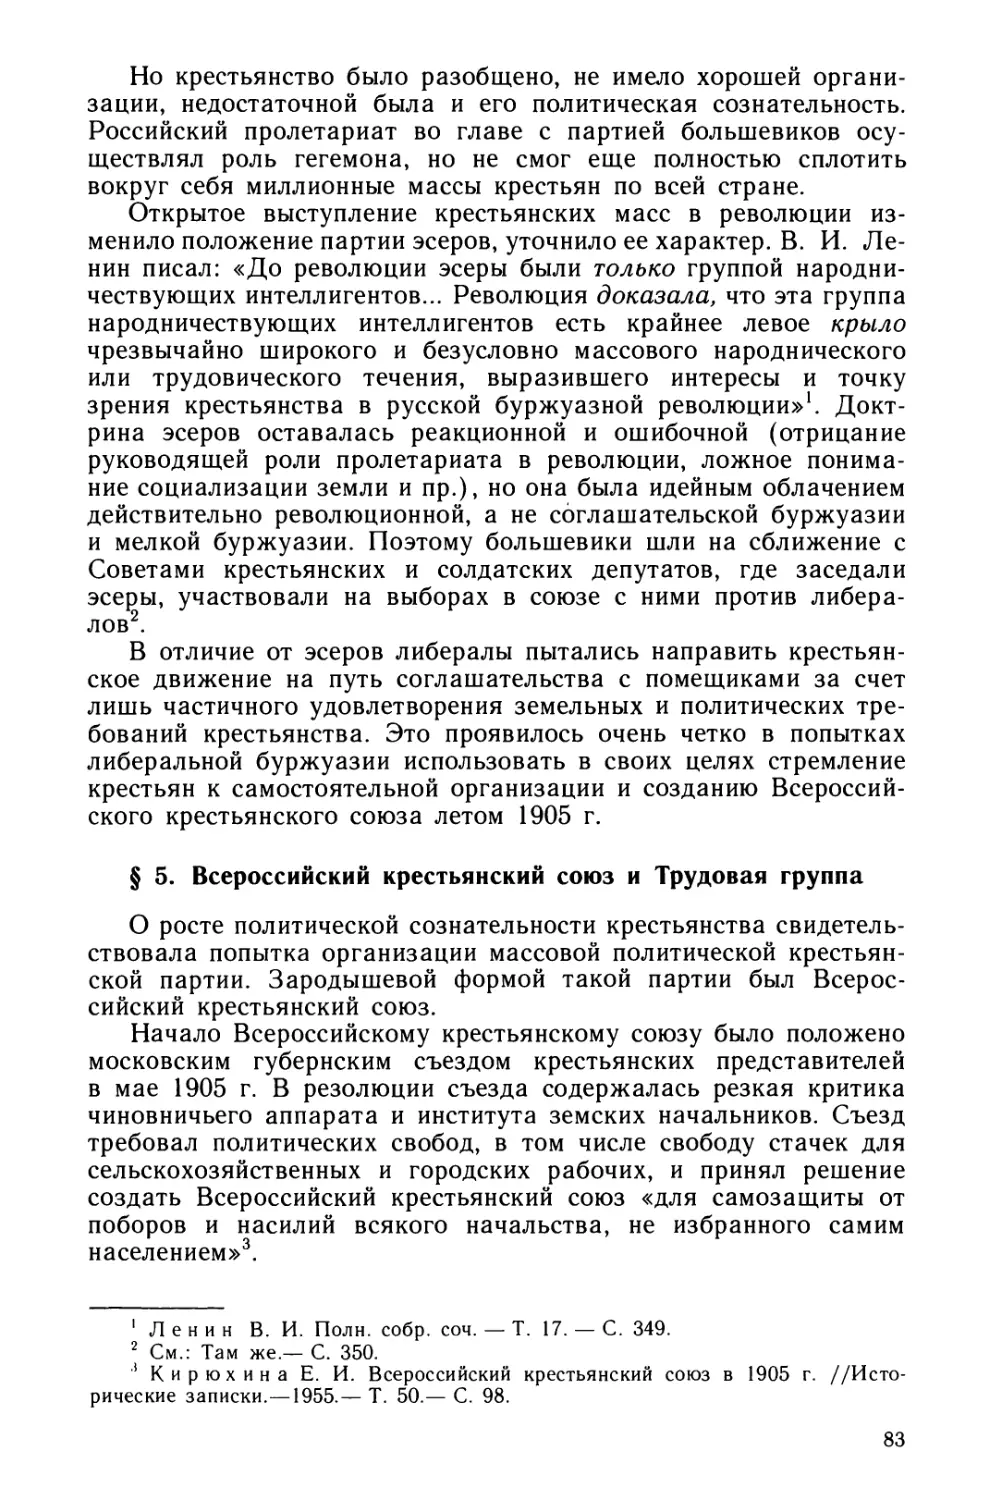 § 5. Всероссийский крестьянский союз и Трудовая группа